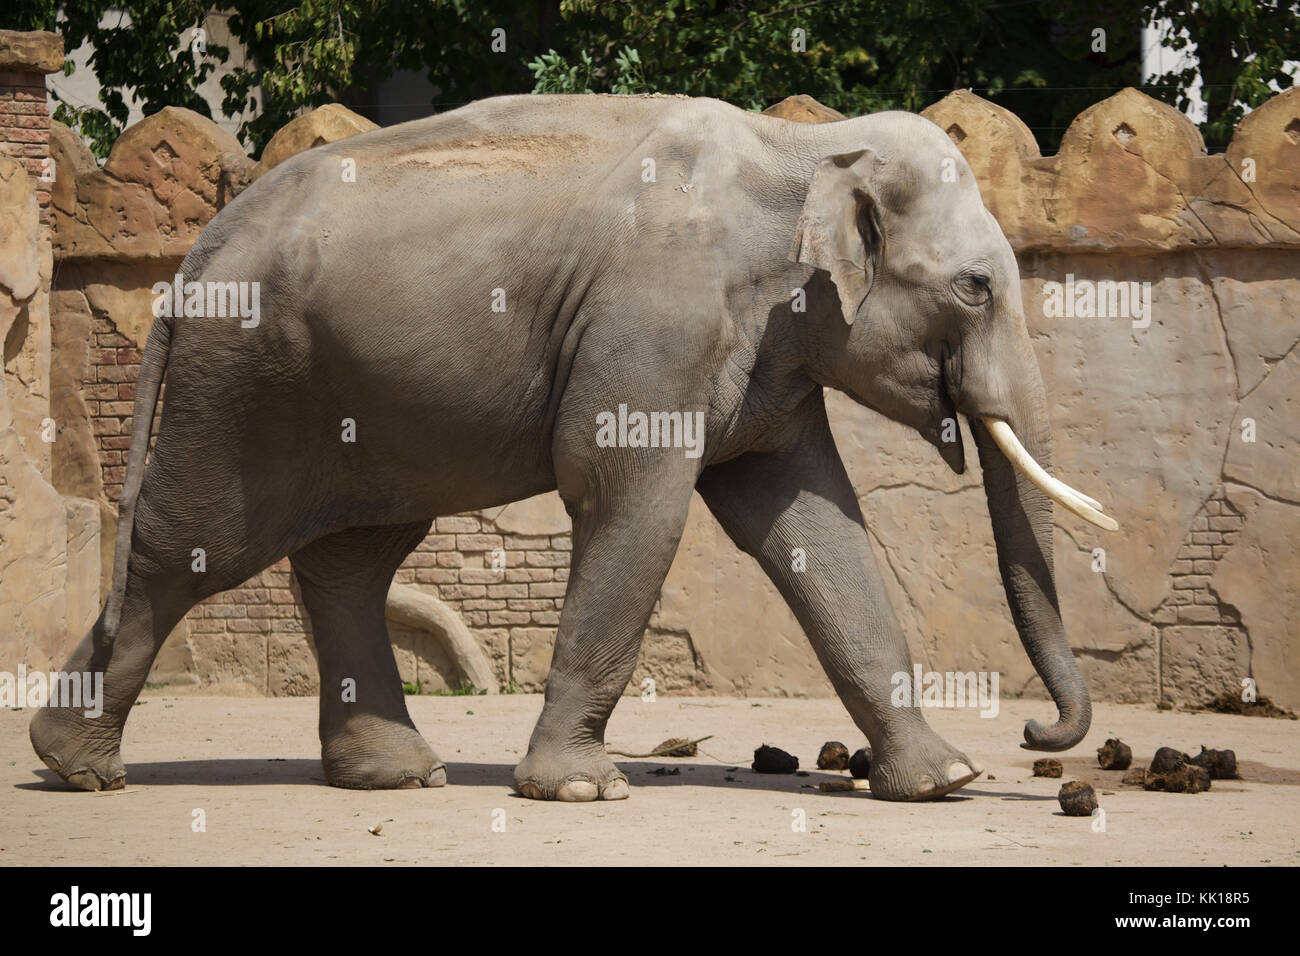 Indian elephant (Elephas maximus indicus)  at Leipzig Zoo in Leipzig, Saxony, Germany. Stock Photo